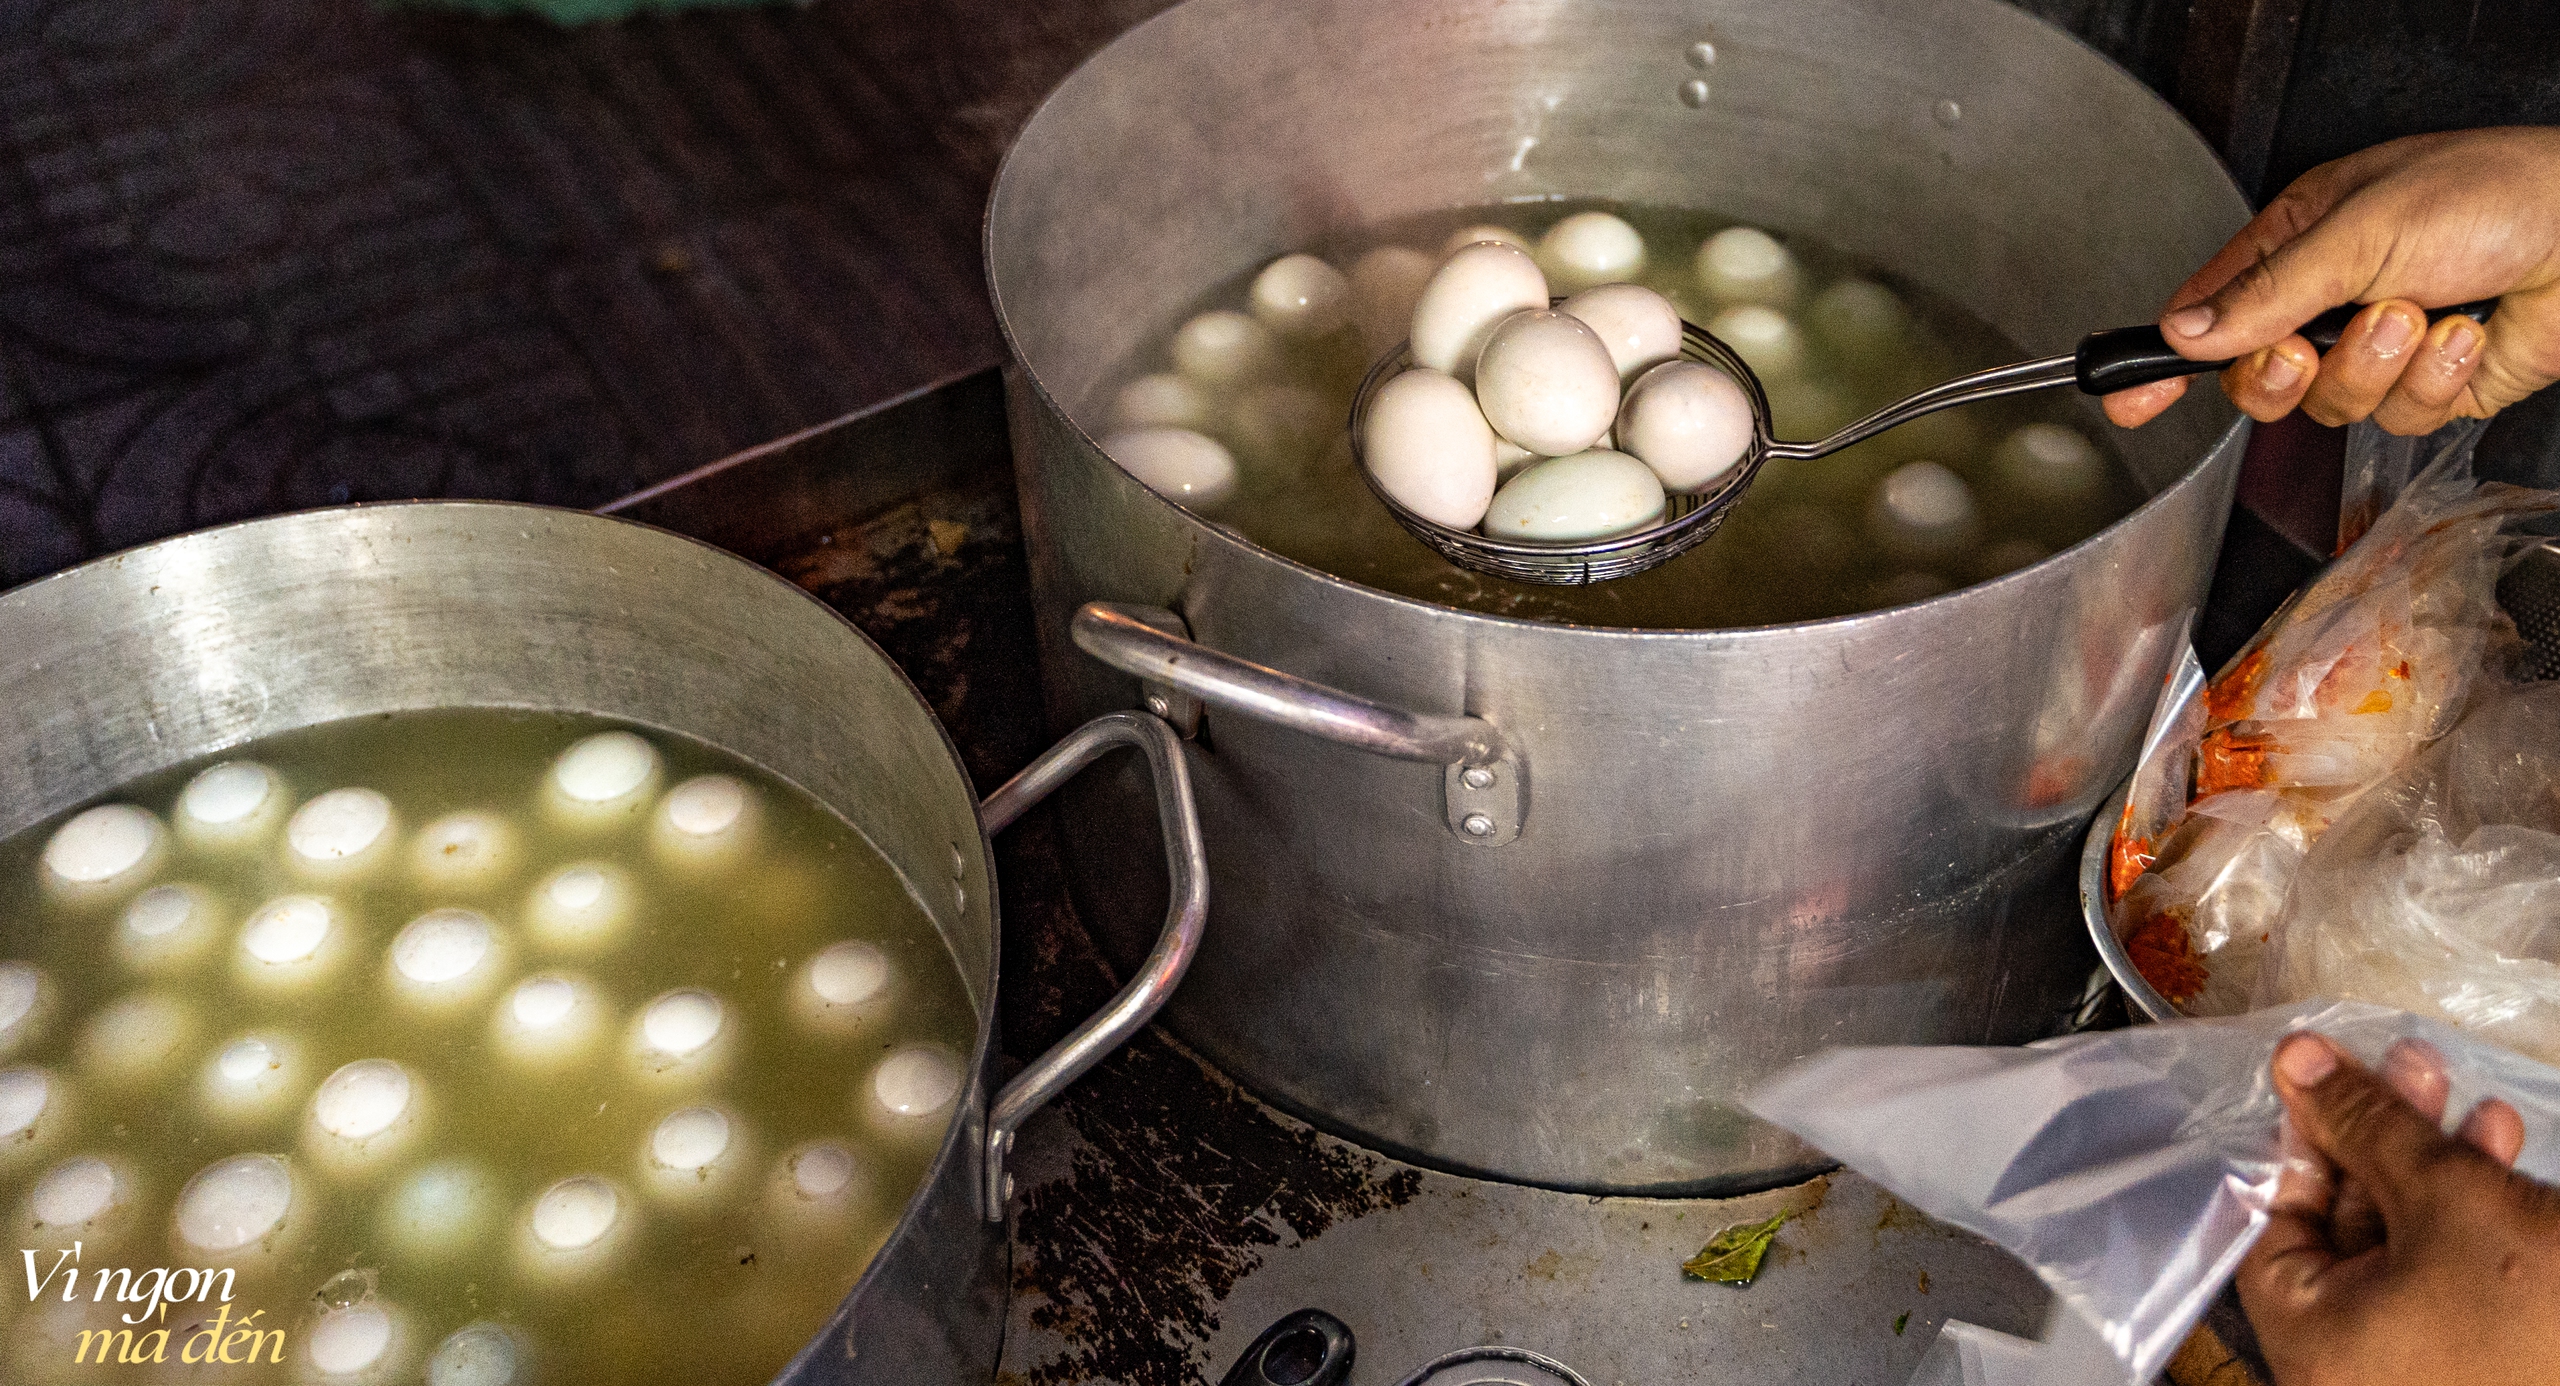 Bán hột vịt lộn mua được nhà: Cửa tiệm mỗi ngày bán hơn 1.000 trứng, bí quyết từ việc luộc bằng nước dừa và ăn cùng muối tiêu xay "không đụng hàng" - Ảnh 3.